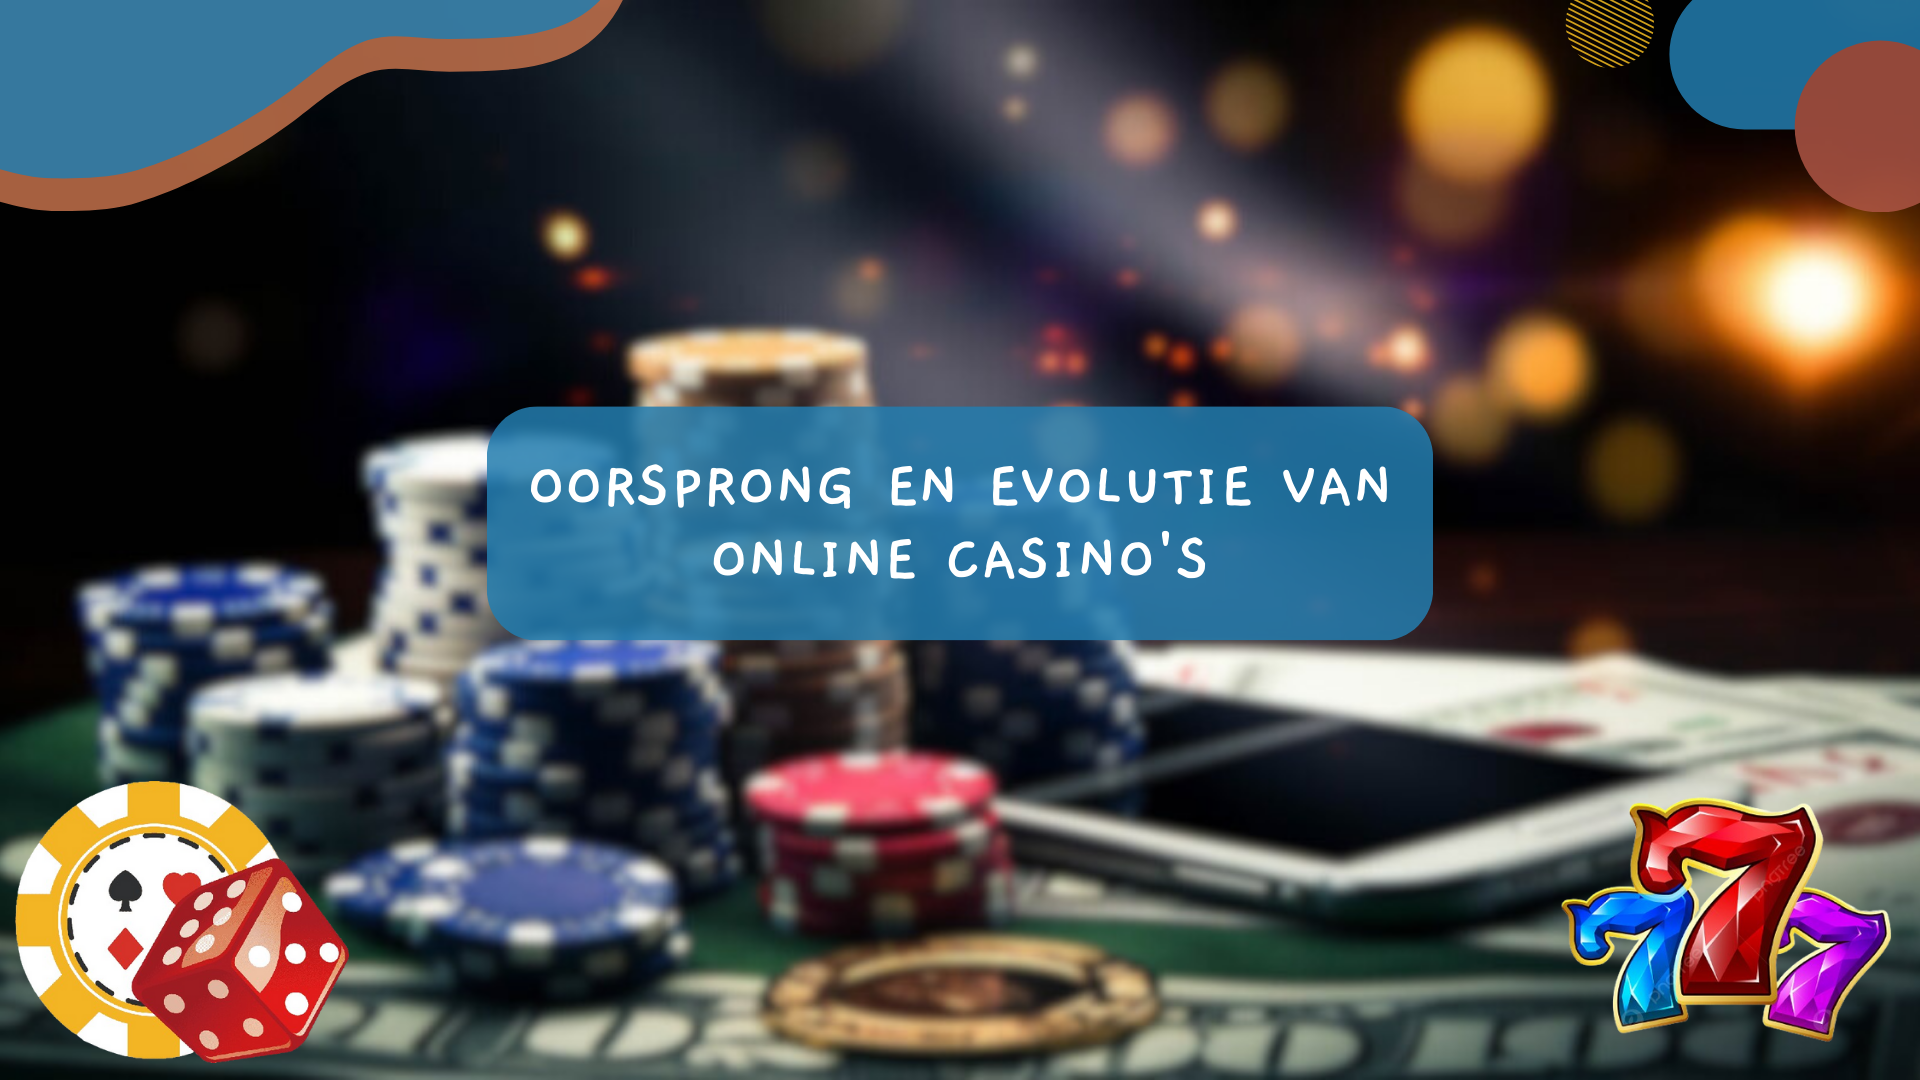 Oorsprong en evolutie van online casino's